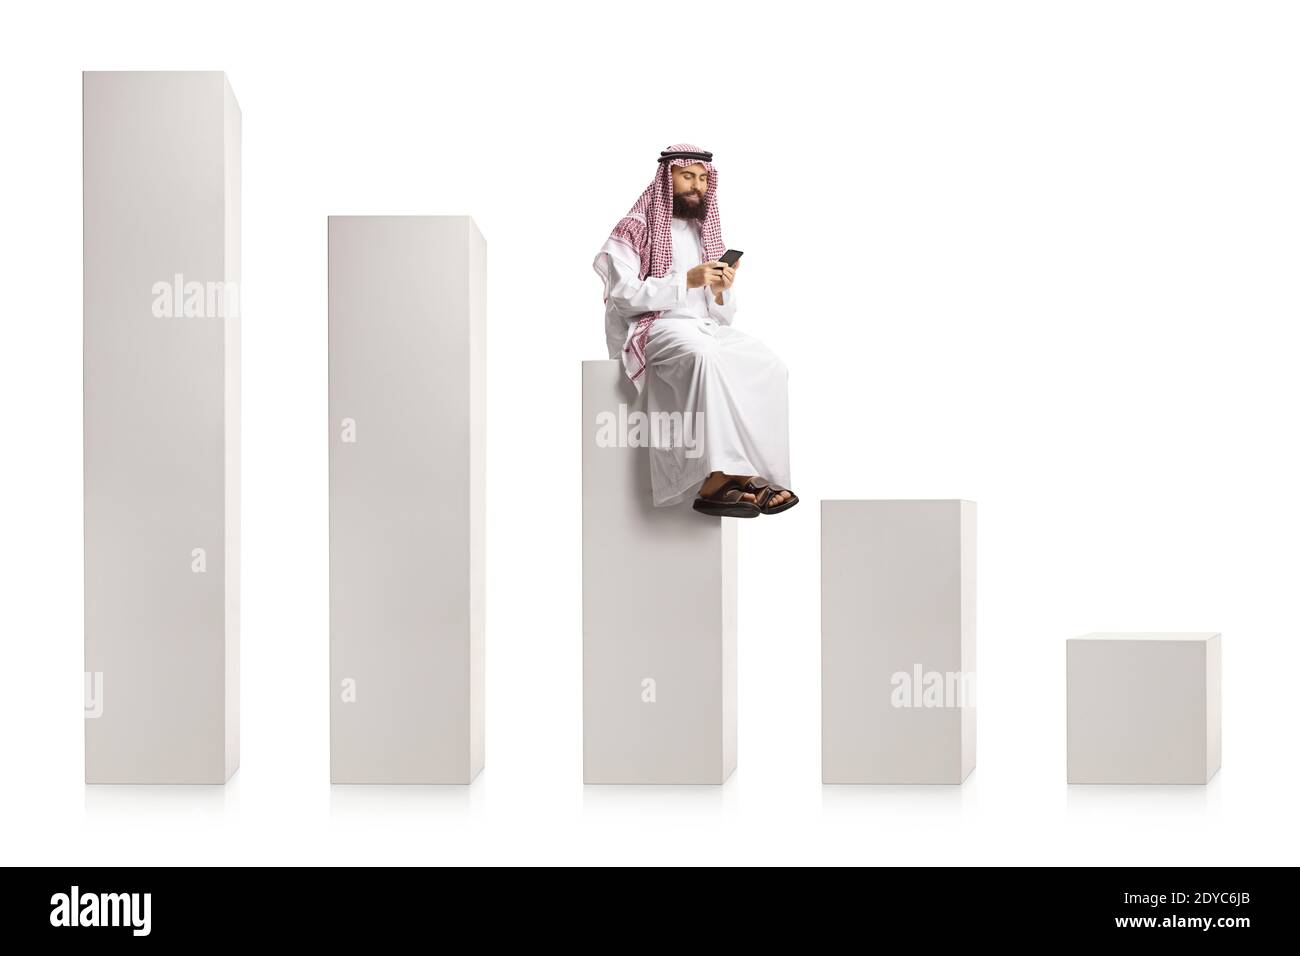 Homme arabe utilisant un smartphone et assis sur un milieu colonne blanche s'élevant de bas à haut isolée sur fond blanc Banque D'Images